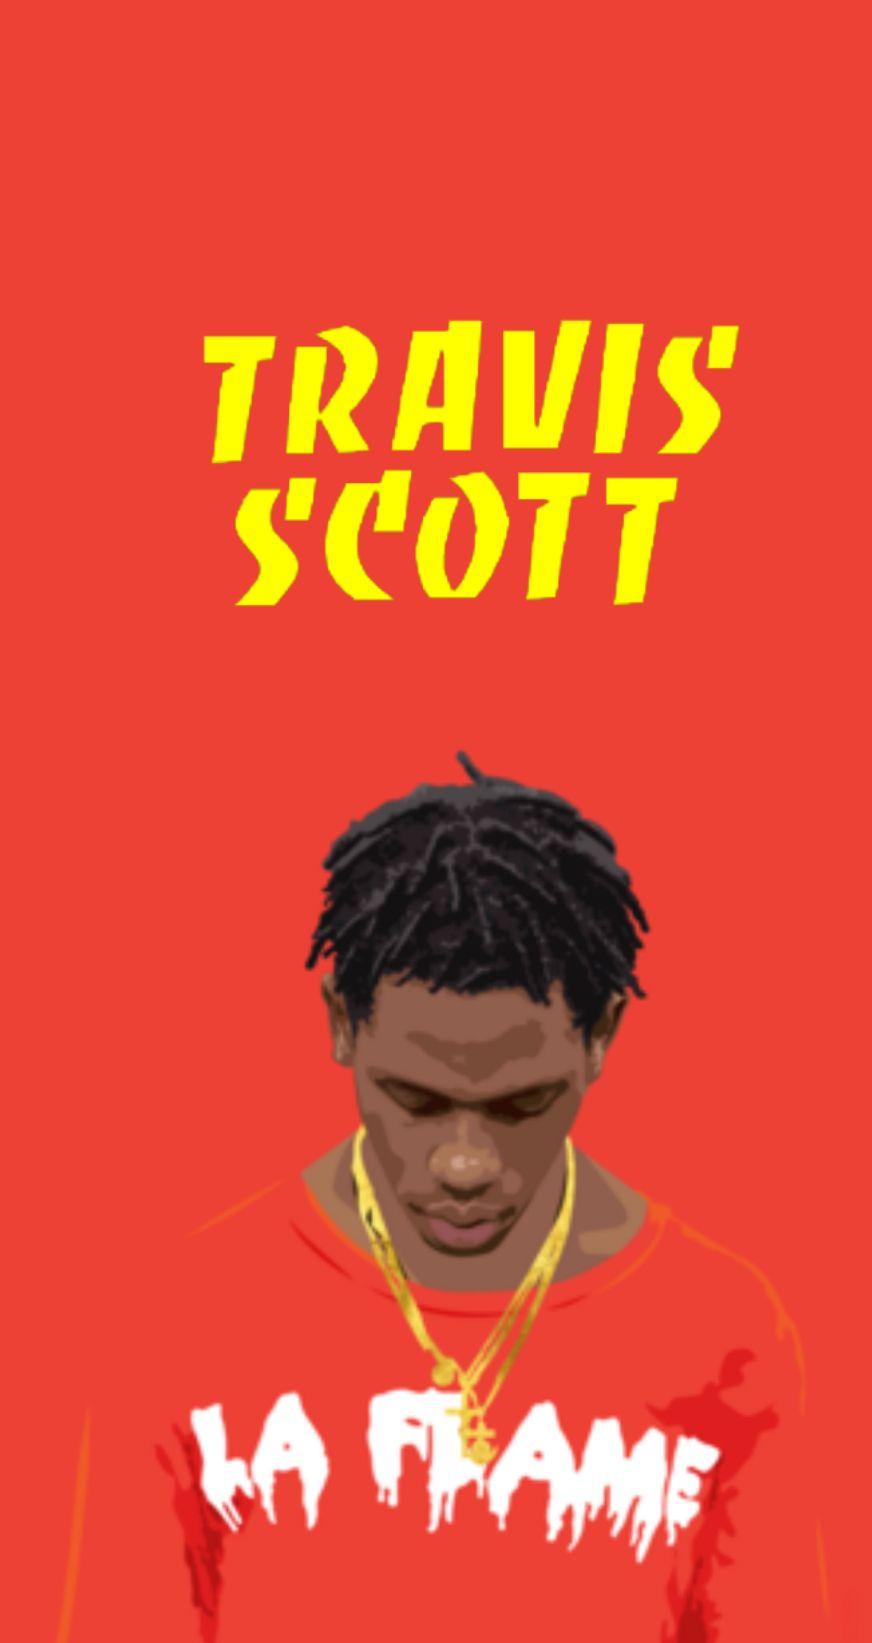 Travis Scott Wallpaper « Kanye West Forum